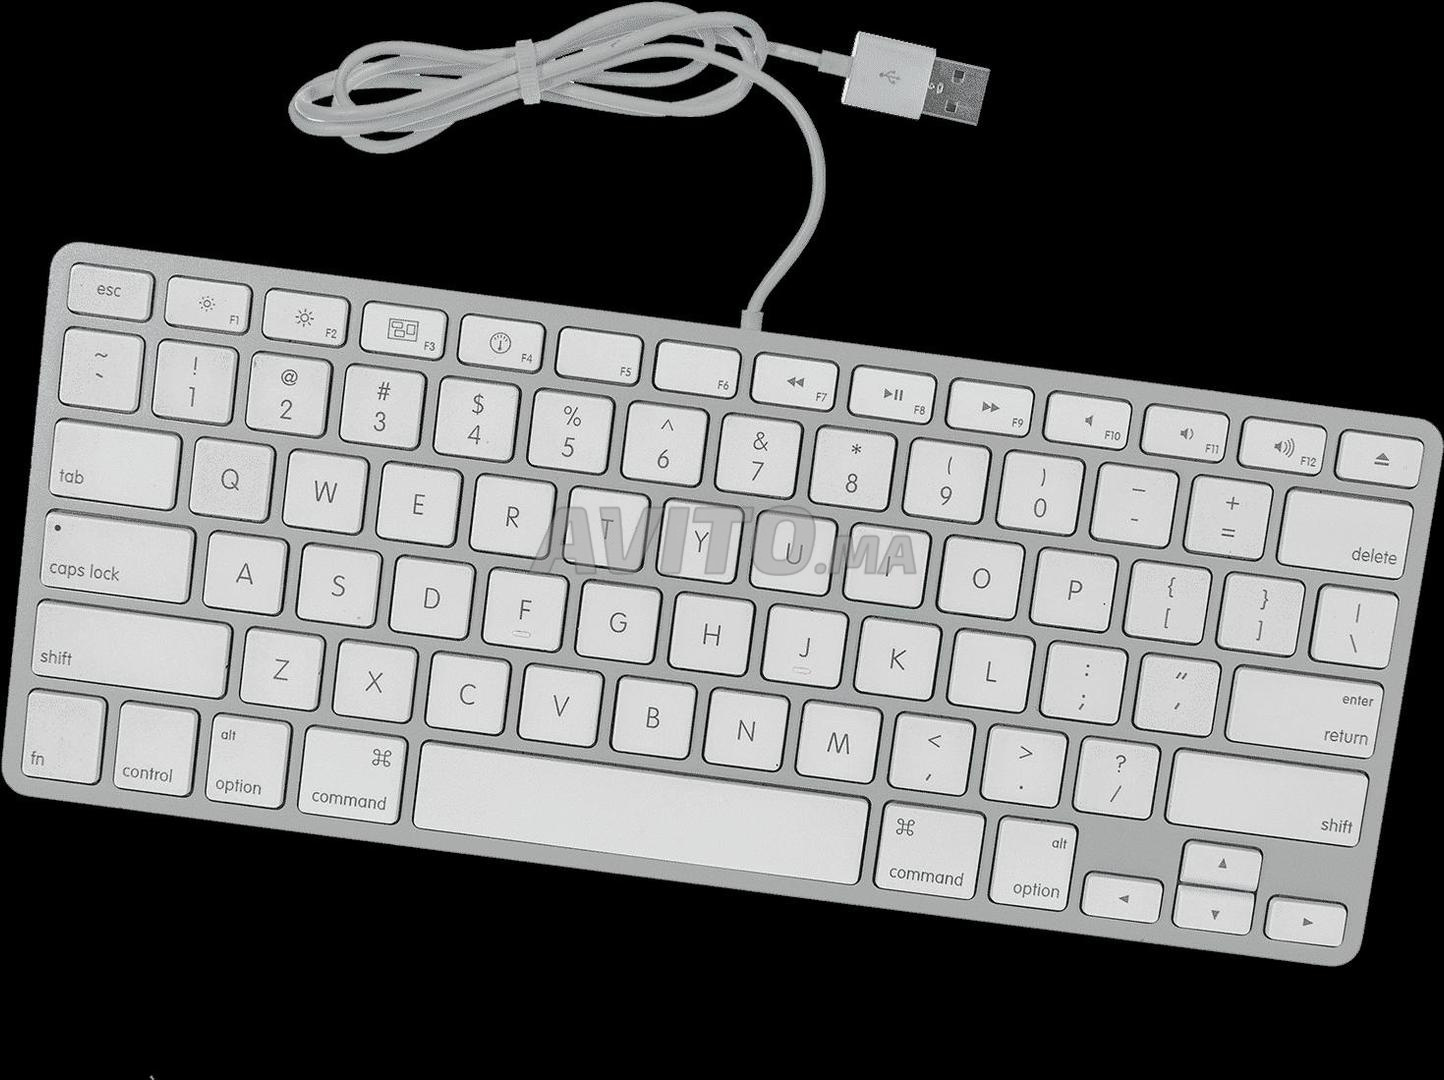 Clavier Apple USB pour Mac A1242